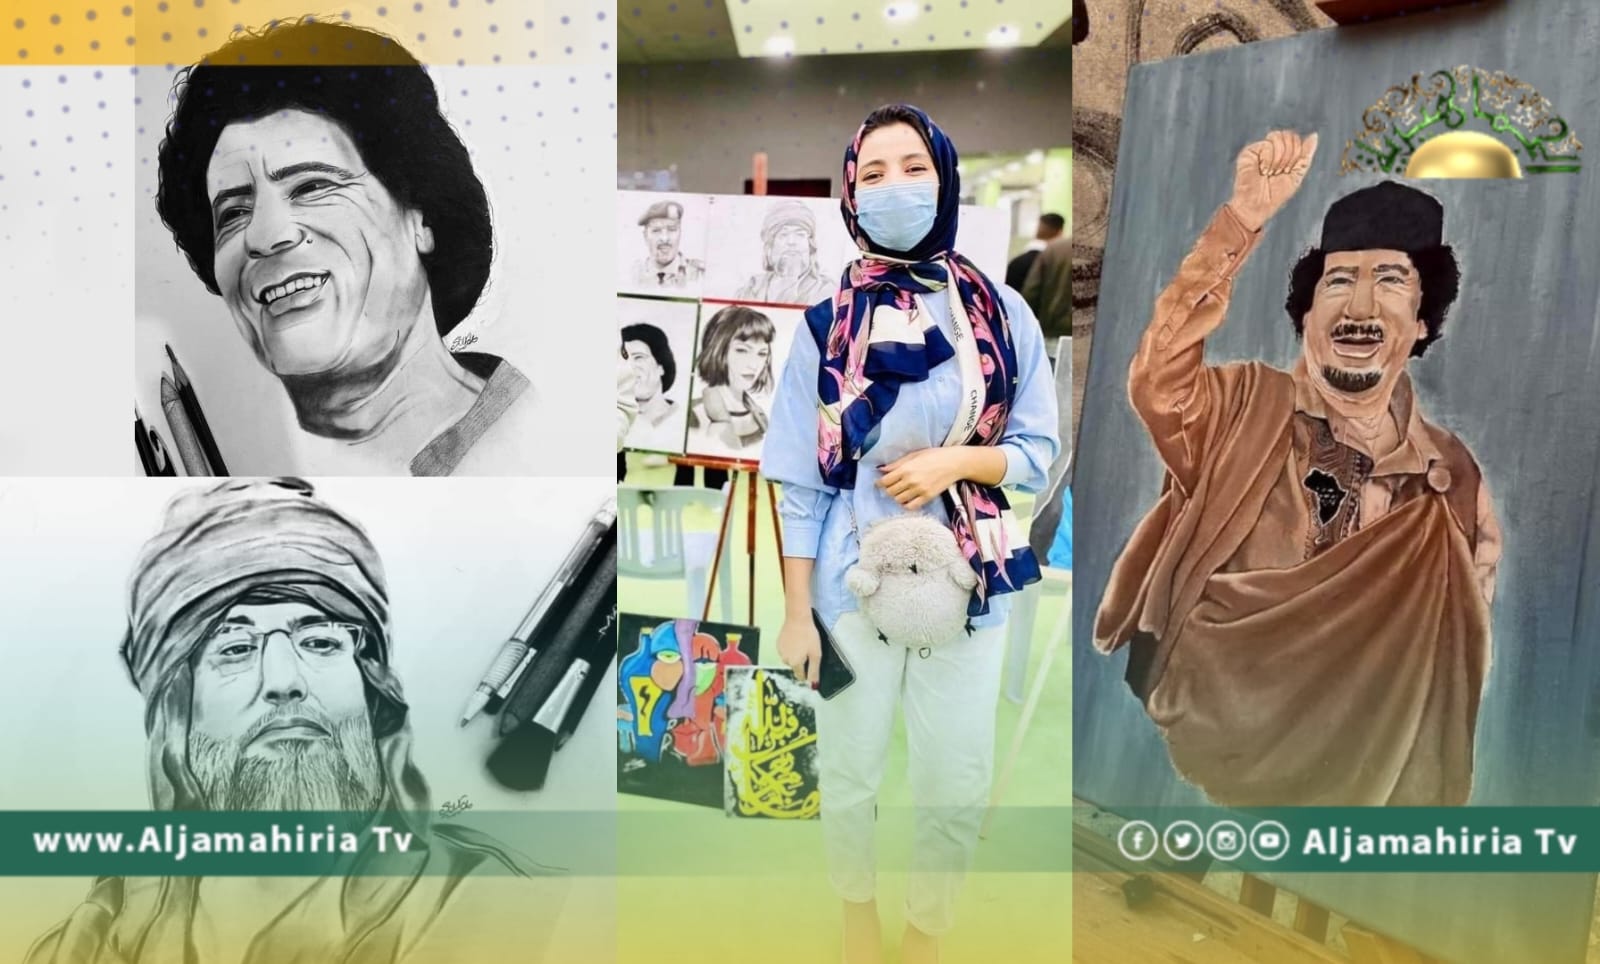 الفنانة سارة أبوزيد ترسم بريشتها الرائعة صورا للقائد الشهيد ونجله الدكتور سيف الإسلام